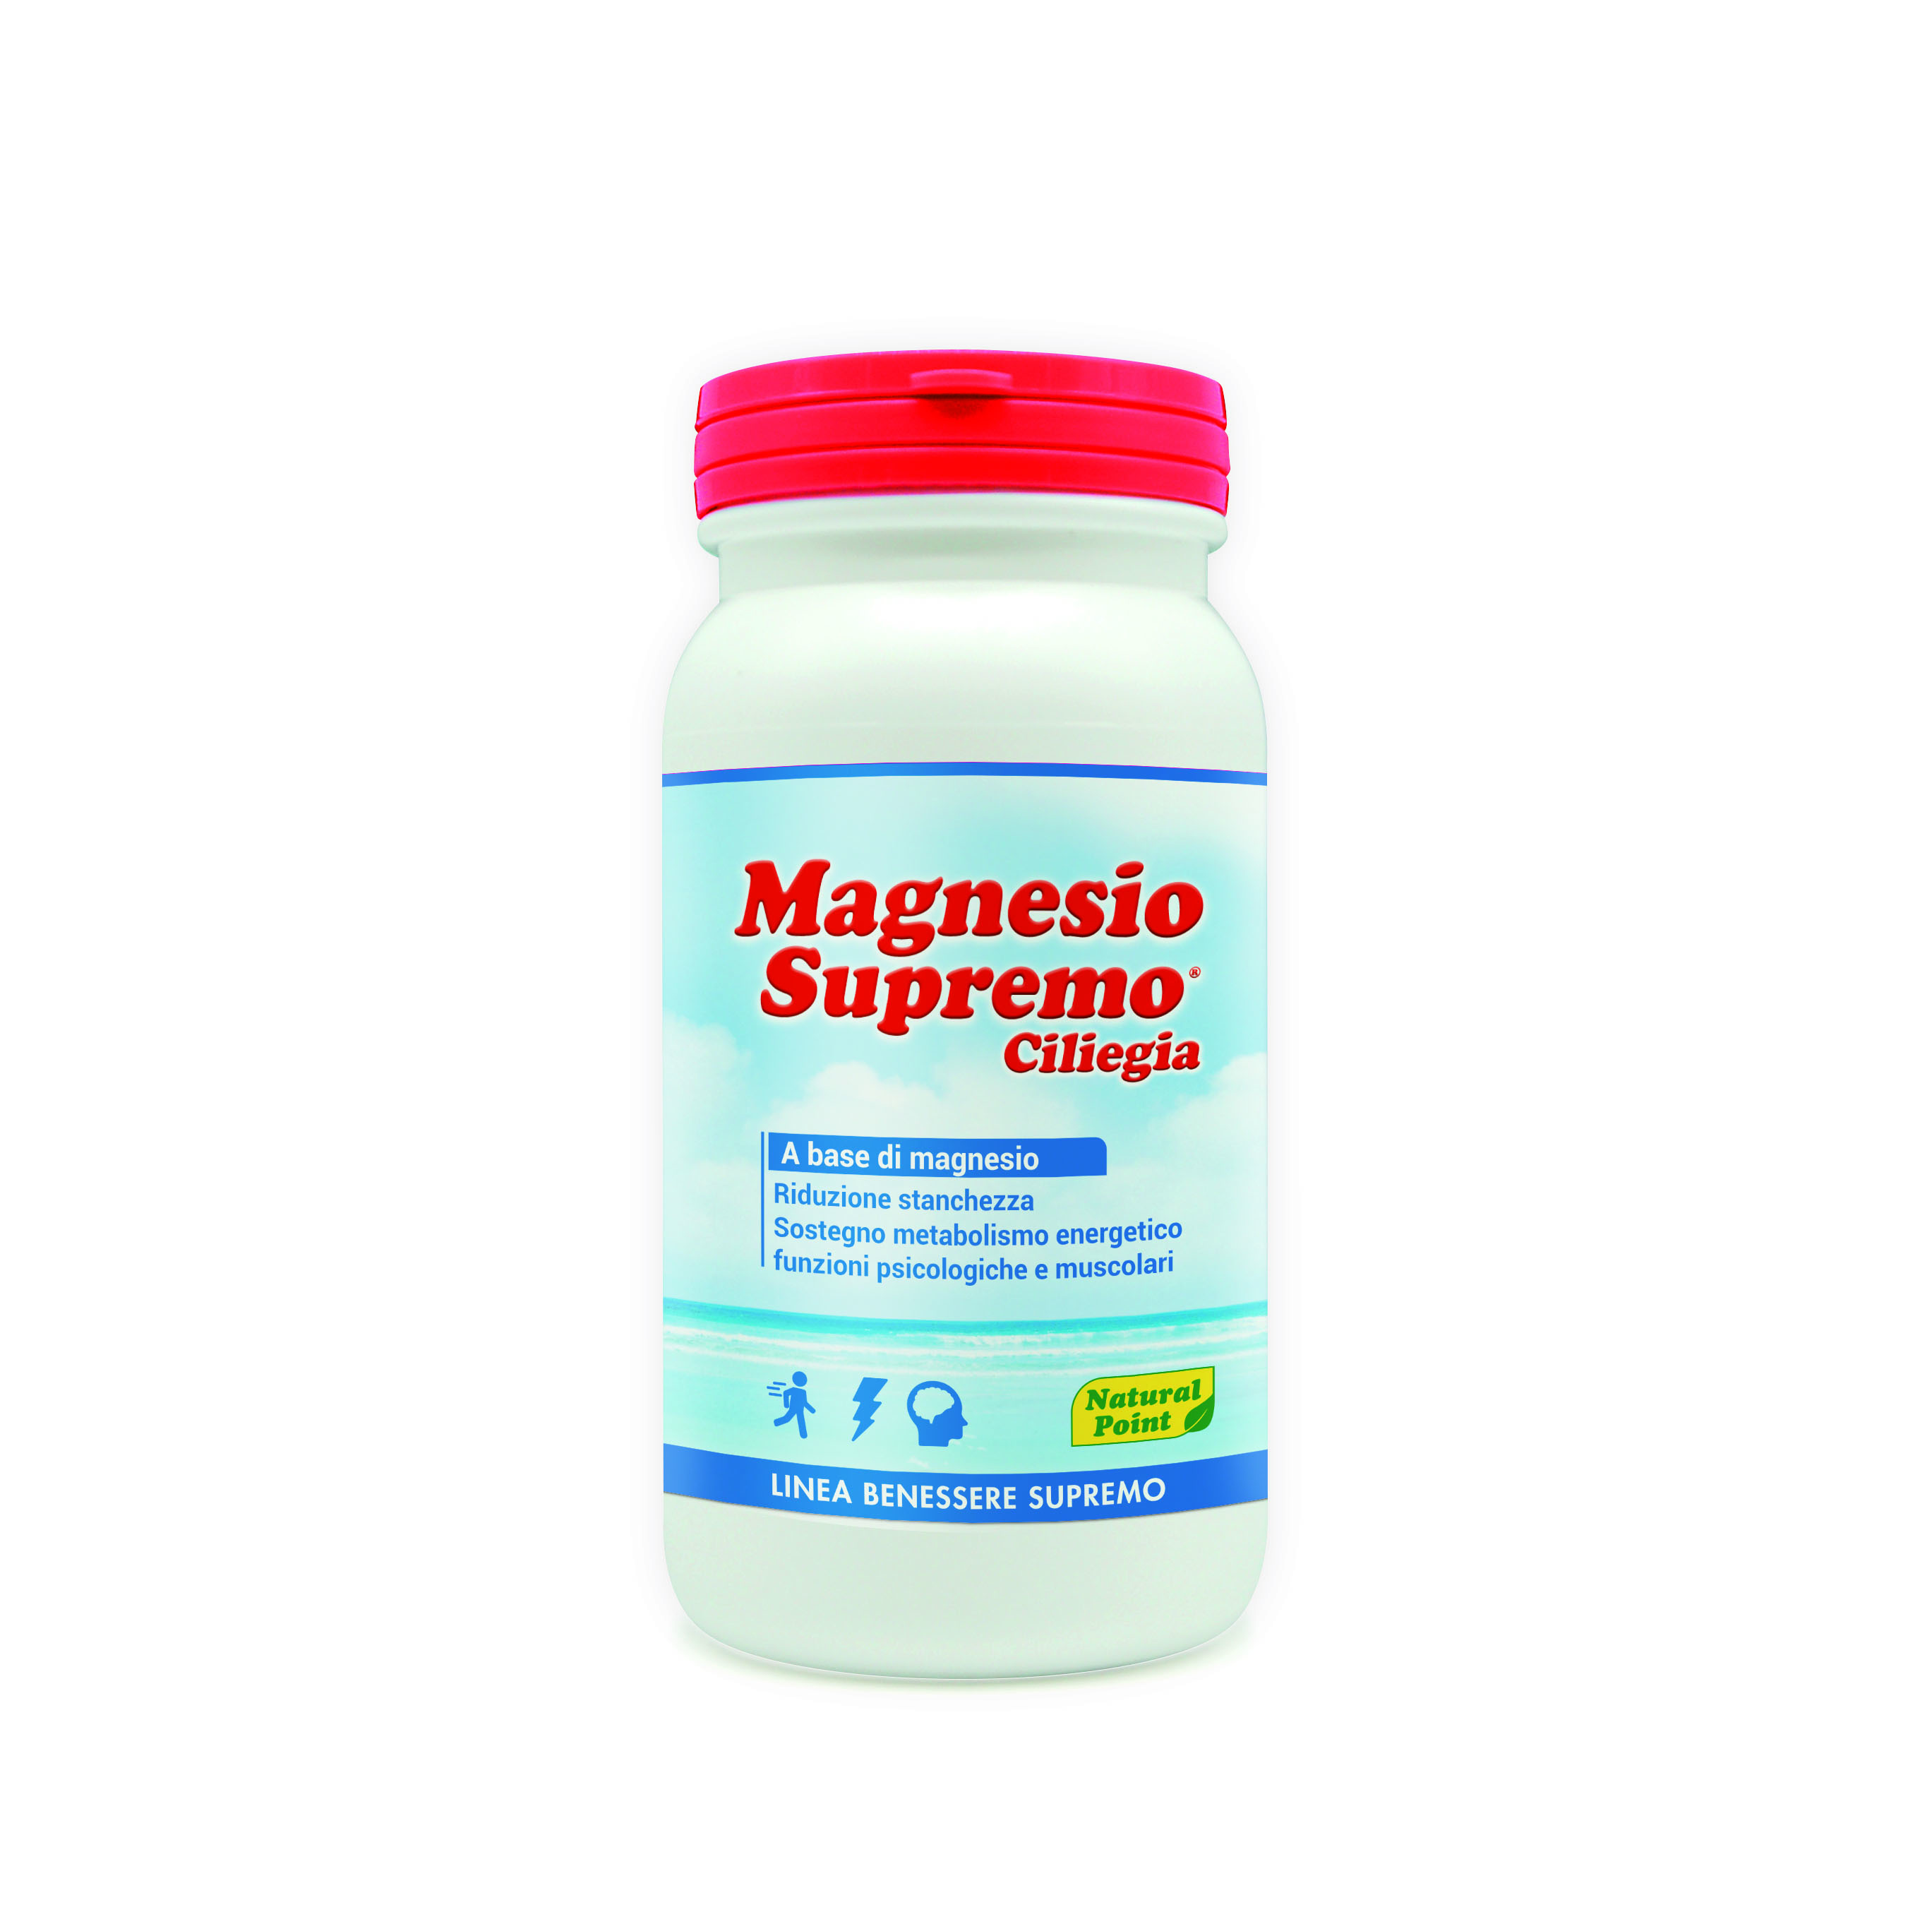 Magnesio Supremo Ciliegia Natural Point 150 g Linea Benessere Supremo